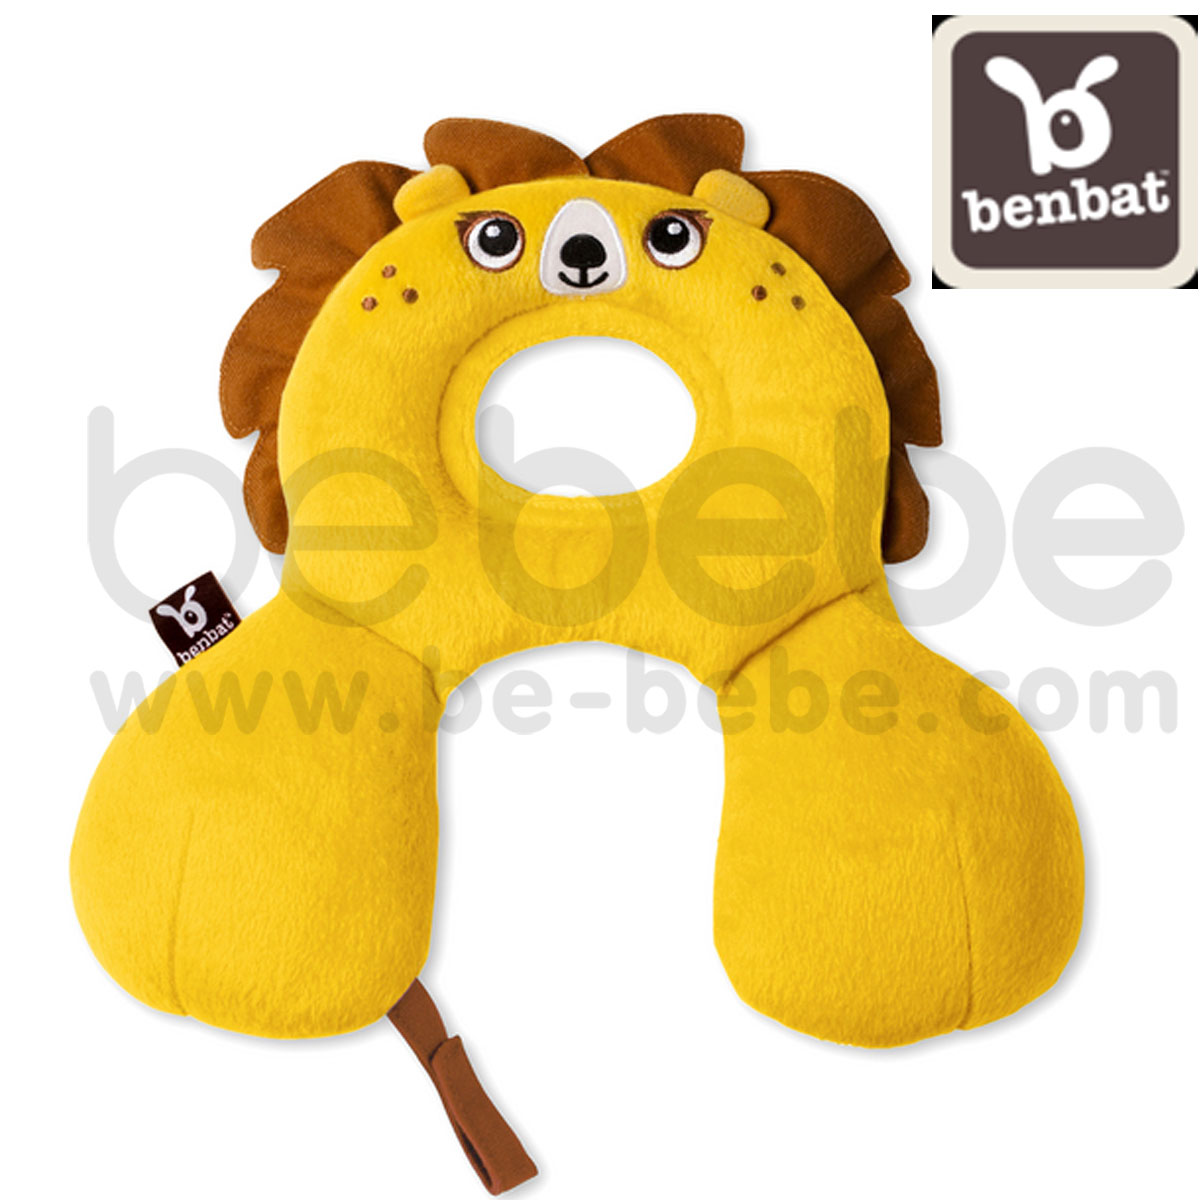 benbat : Head and Neck Support/Lion (HR209)